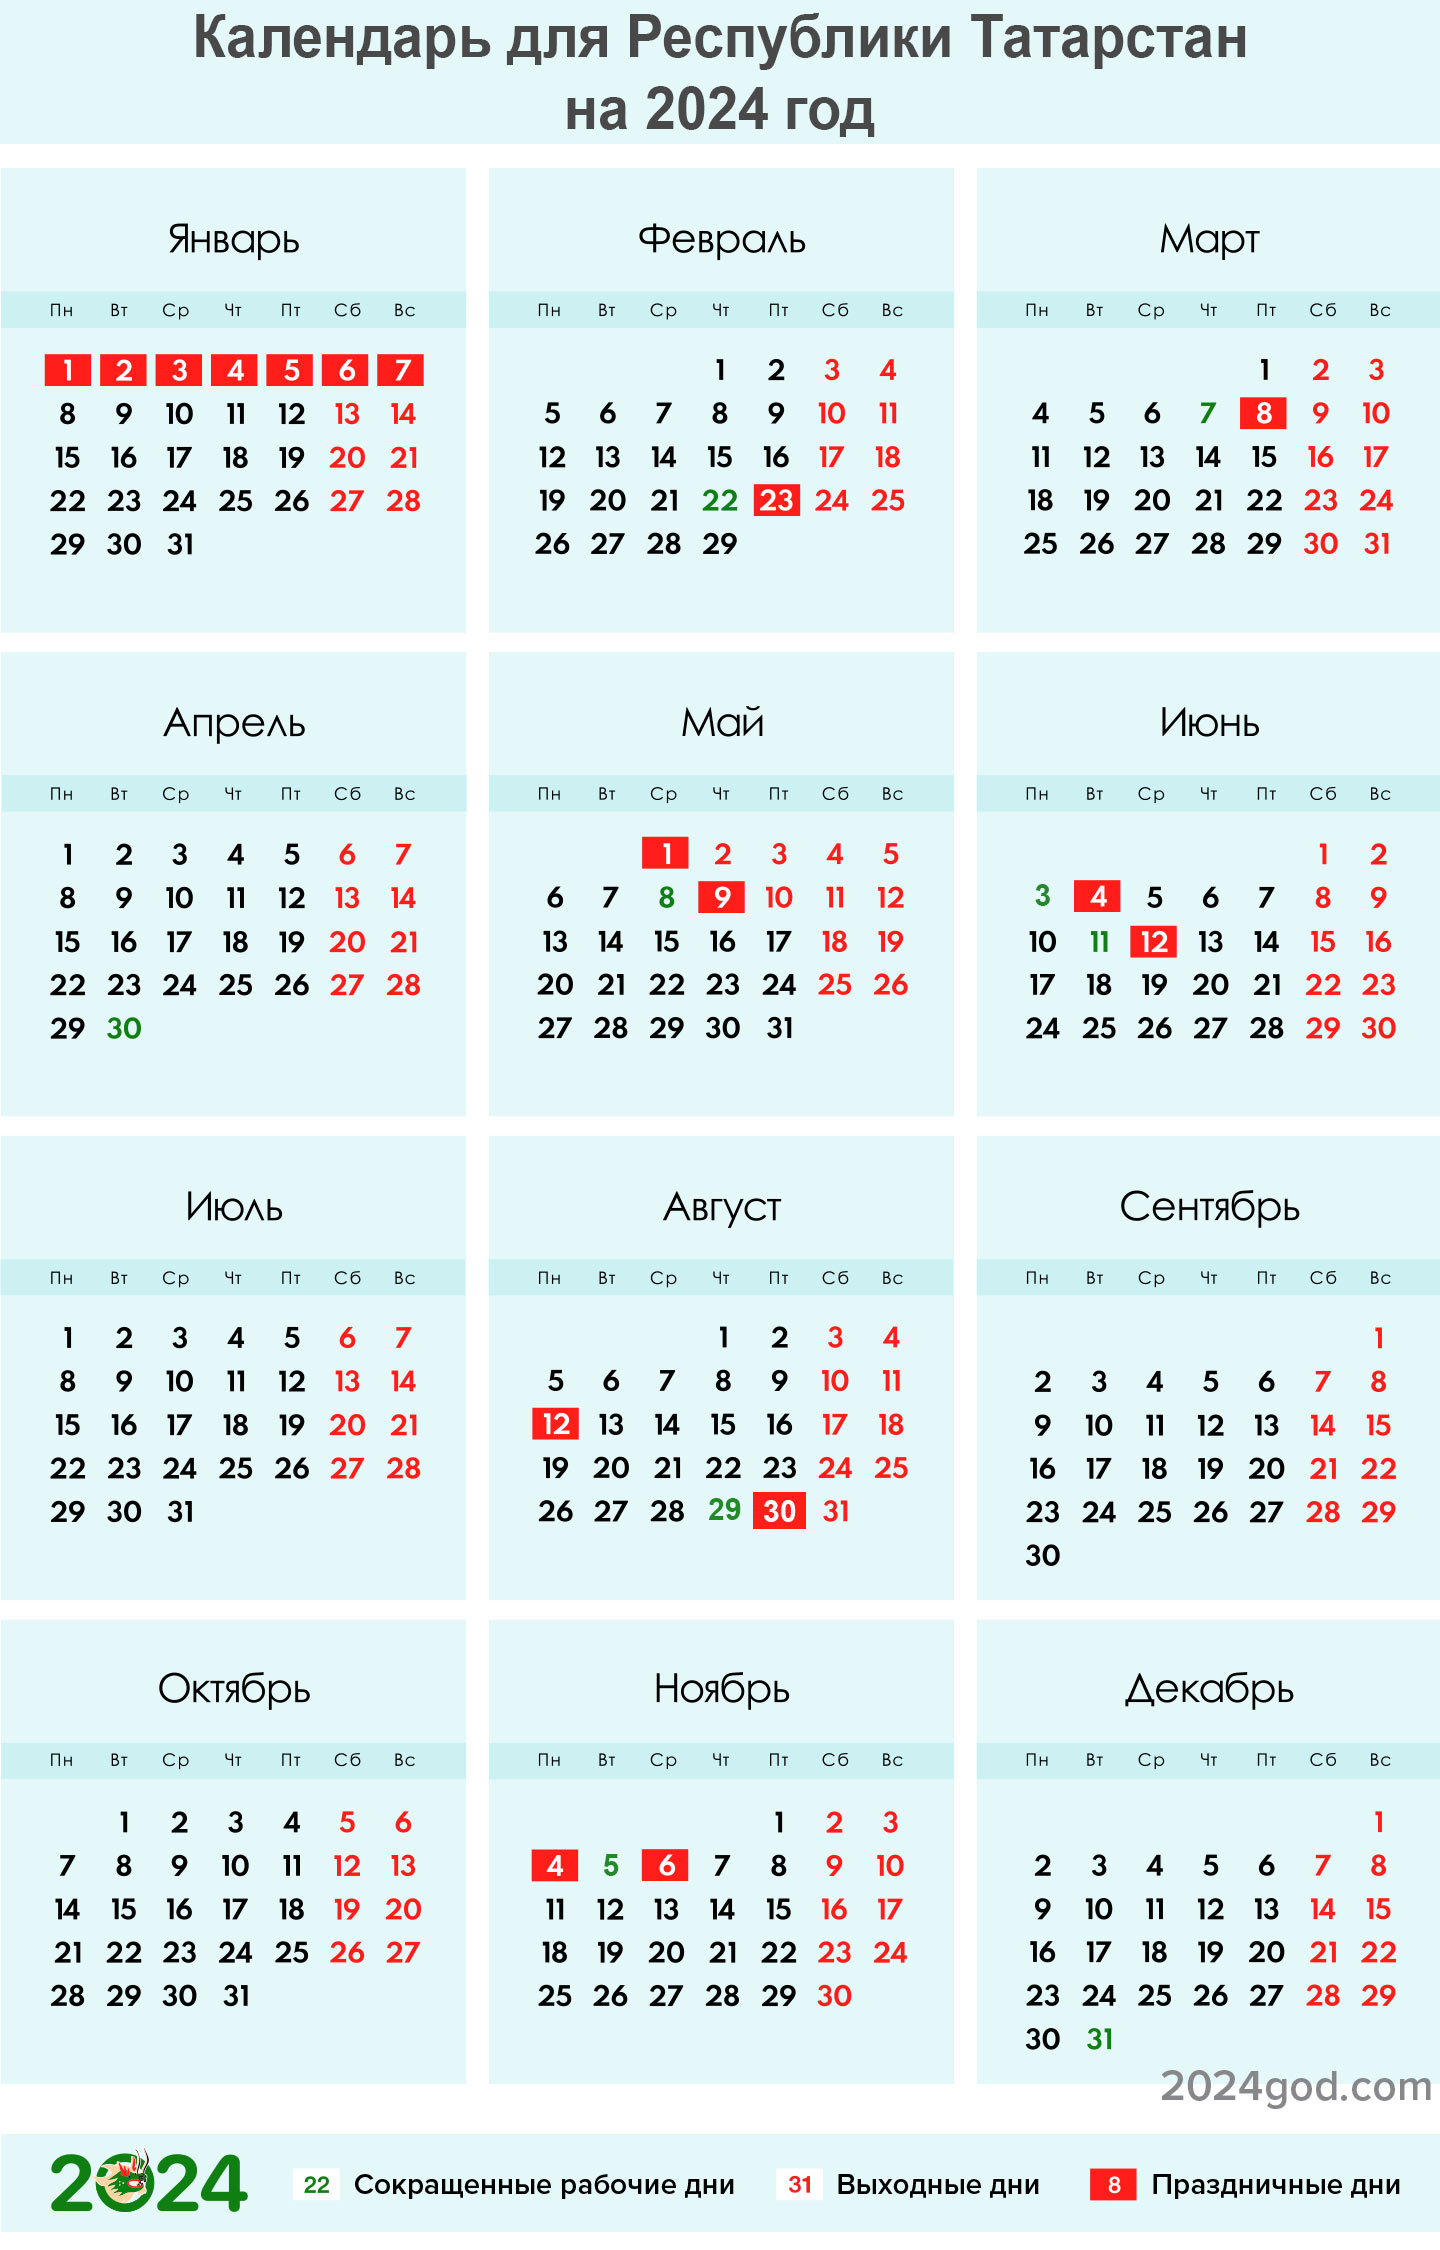 Производственный календарь на 2024 год в Татарстане с праздниками